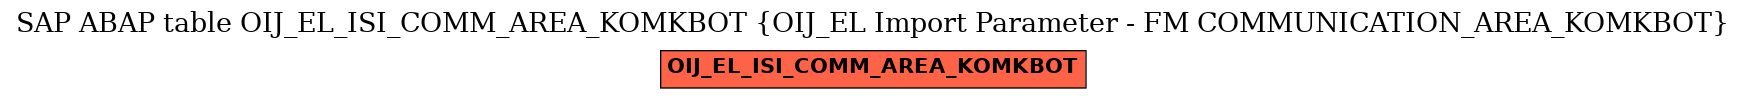 E-R Diagram for table OIJ_EL_ISI_COMM_AREA_KOMKBOT (OIJ_EL Import Parameter - FM COMMUNICATION_AREA_KOMKBOT)